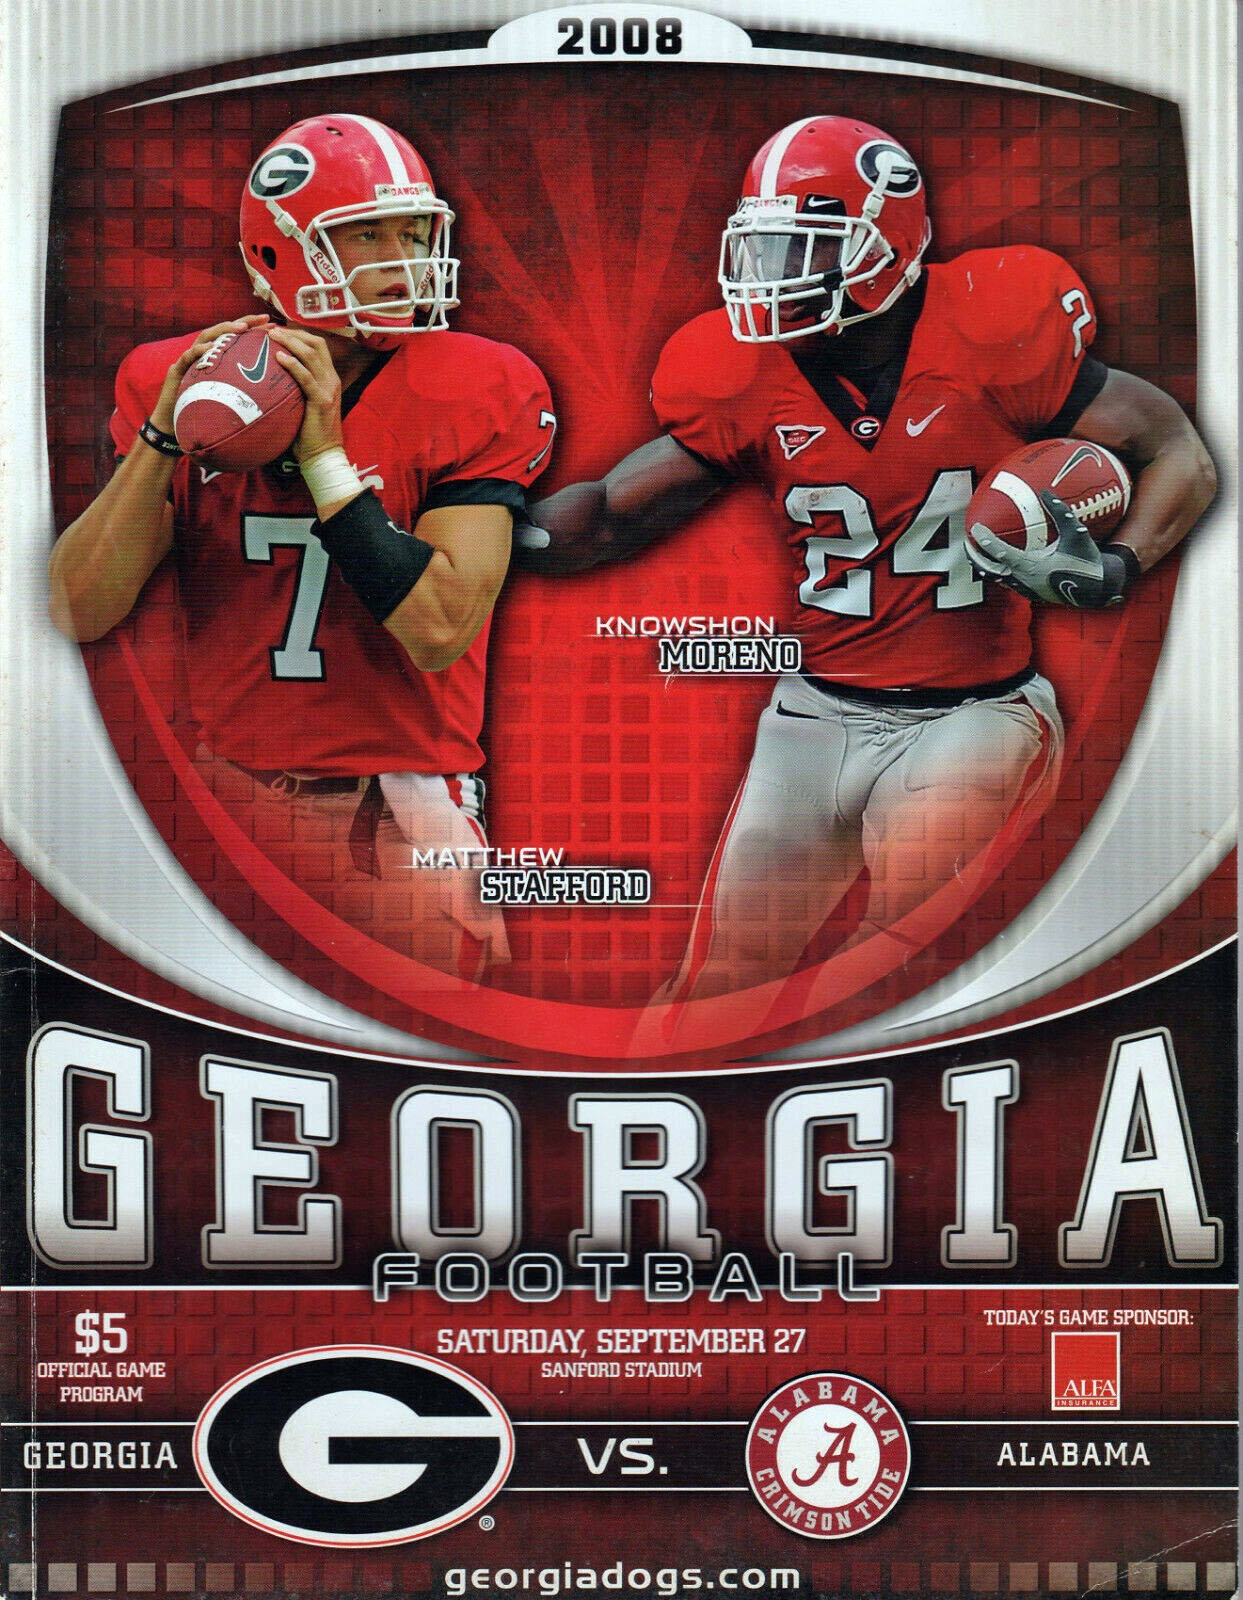 Georgia Bulldogs vs. Alabama Crimson Tide (September 27, 2008)